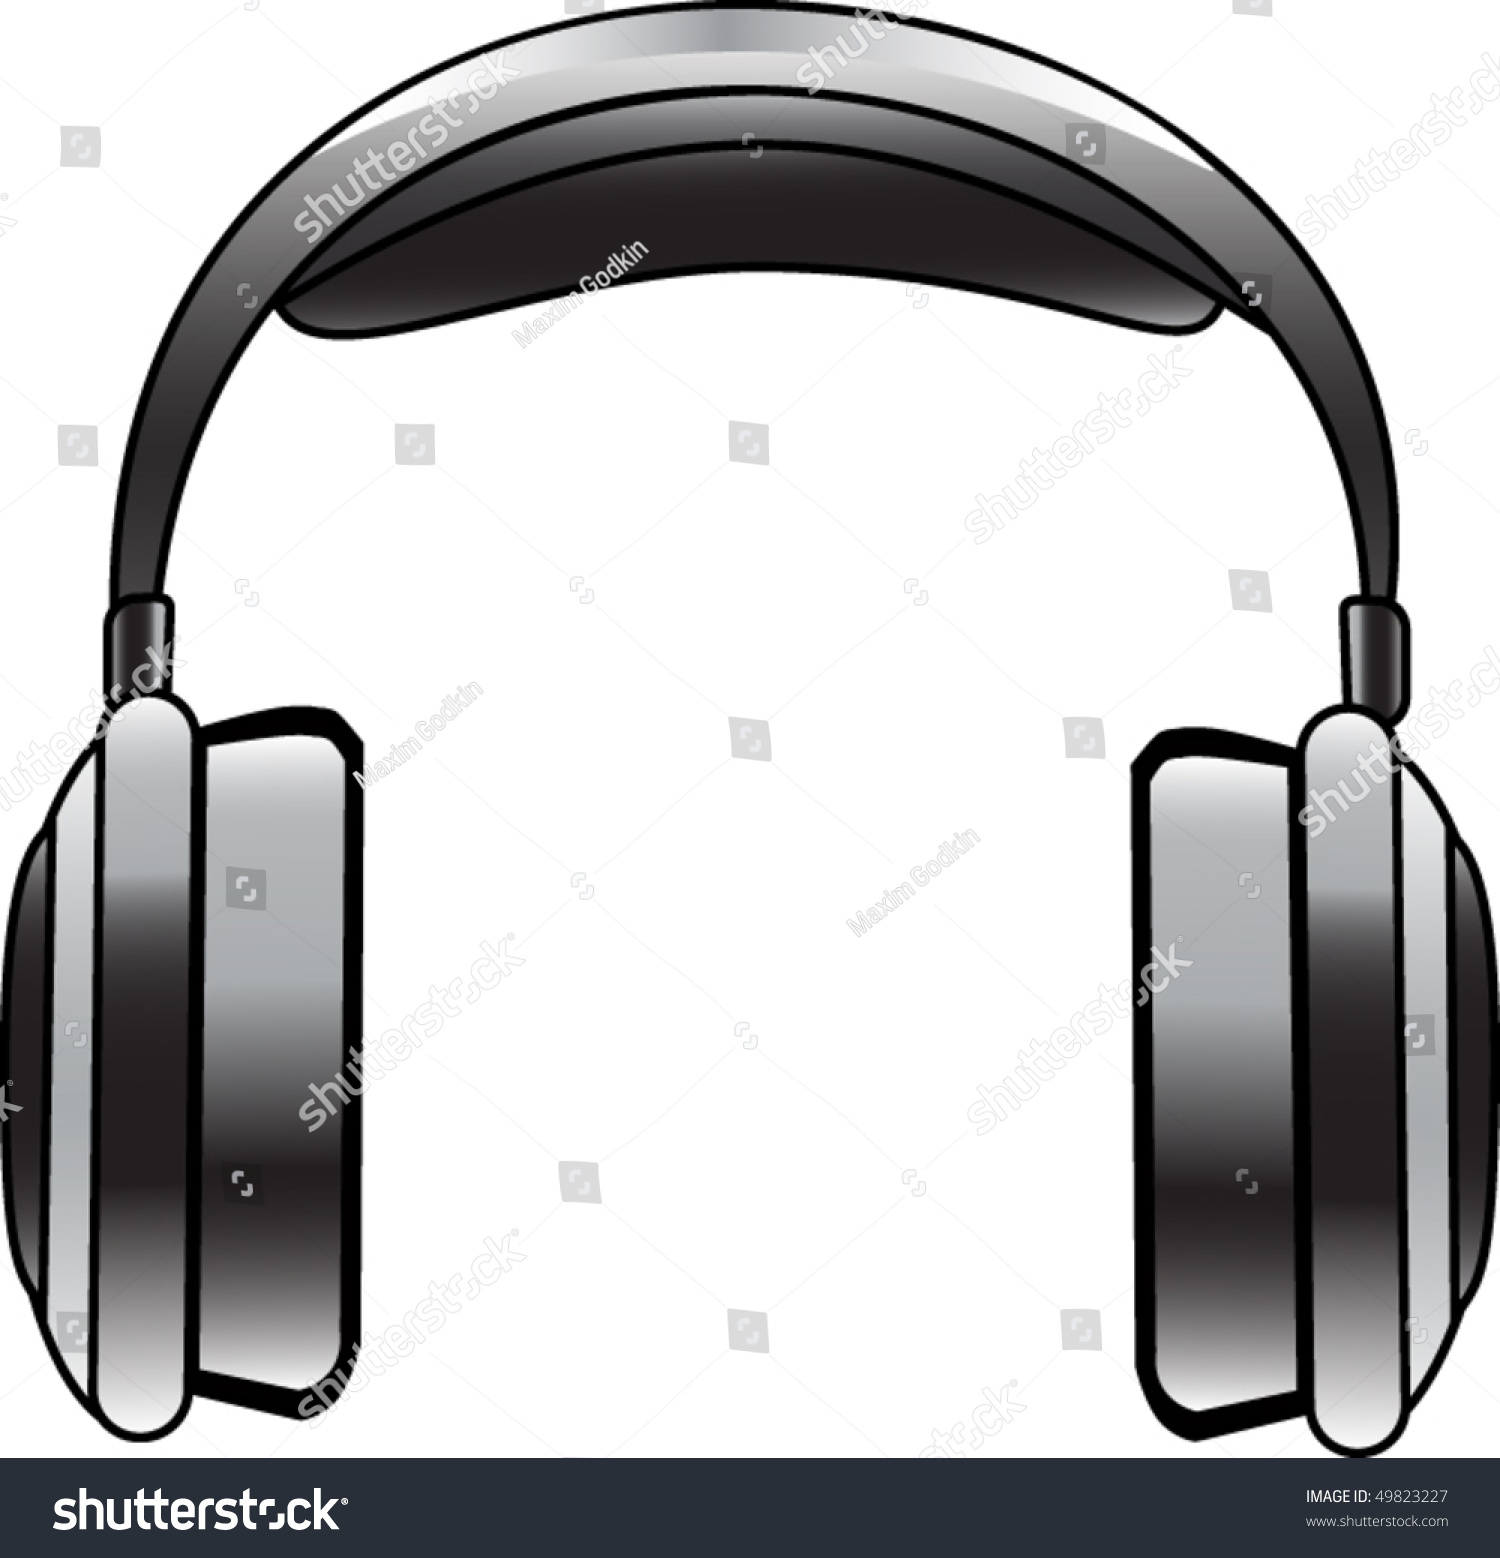 Vector Headphones - 49823227 : Shutterstock